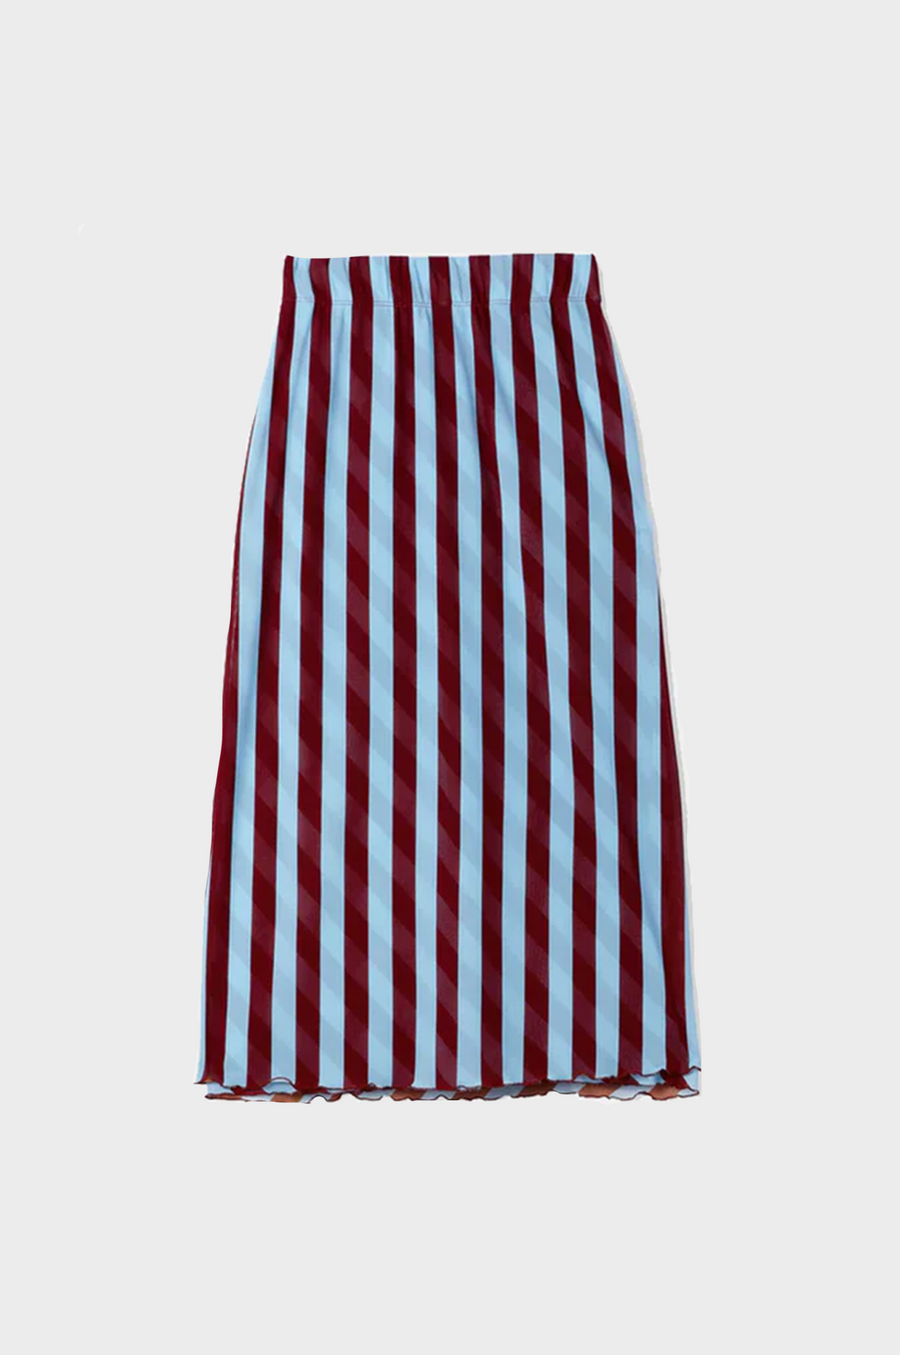 Sunnei - Printed Tulle Skirt - Celestial Stripe